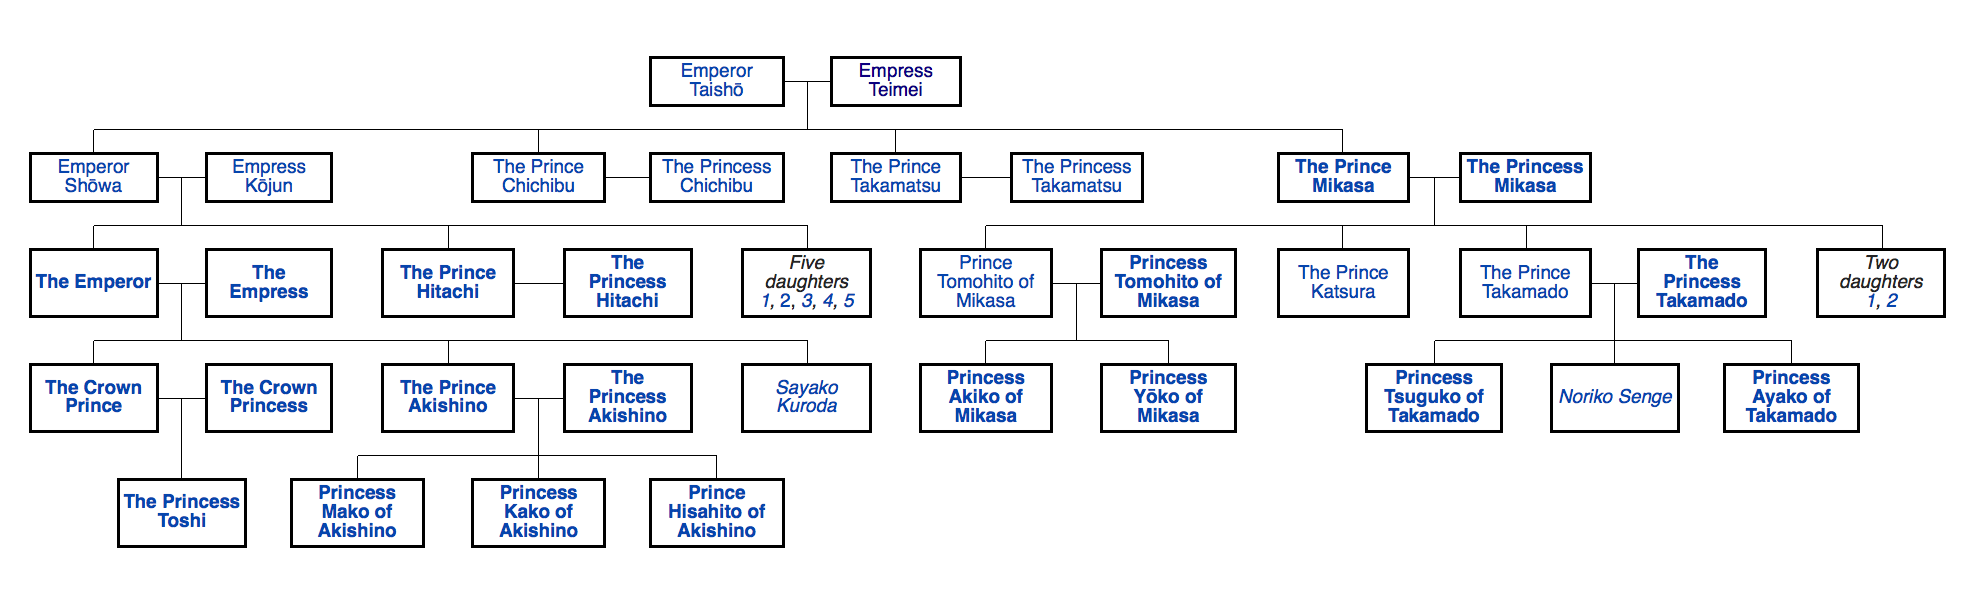 yamato dynasty family tree